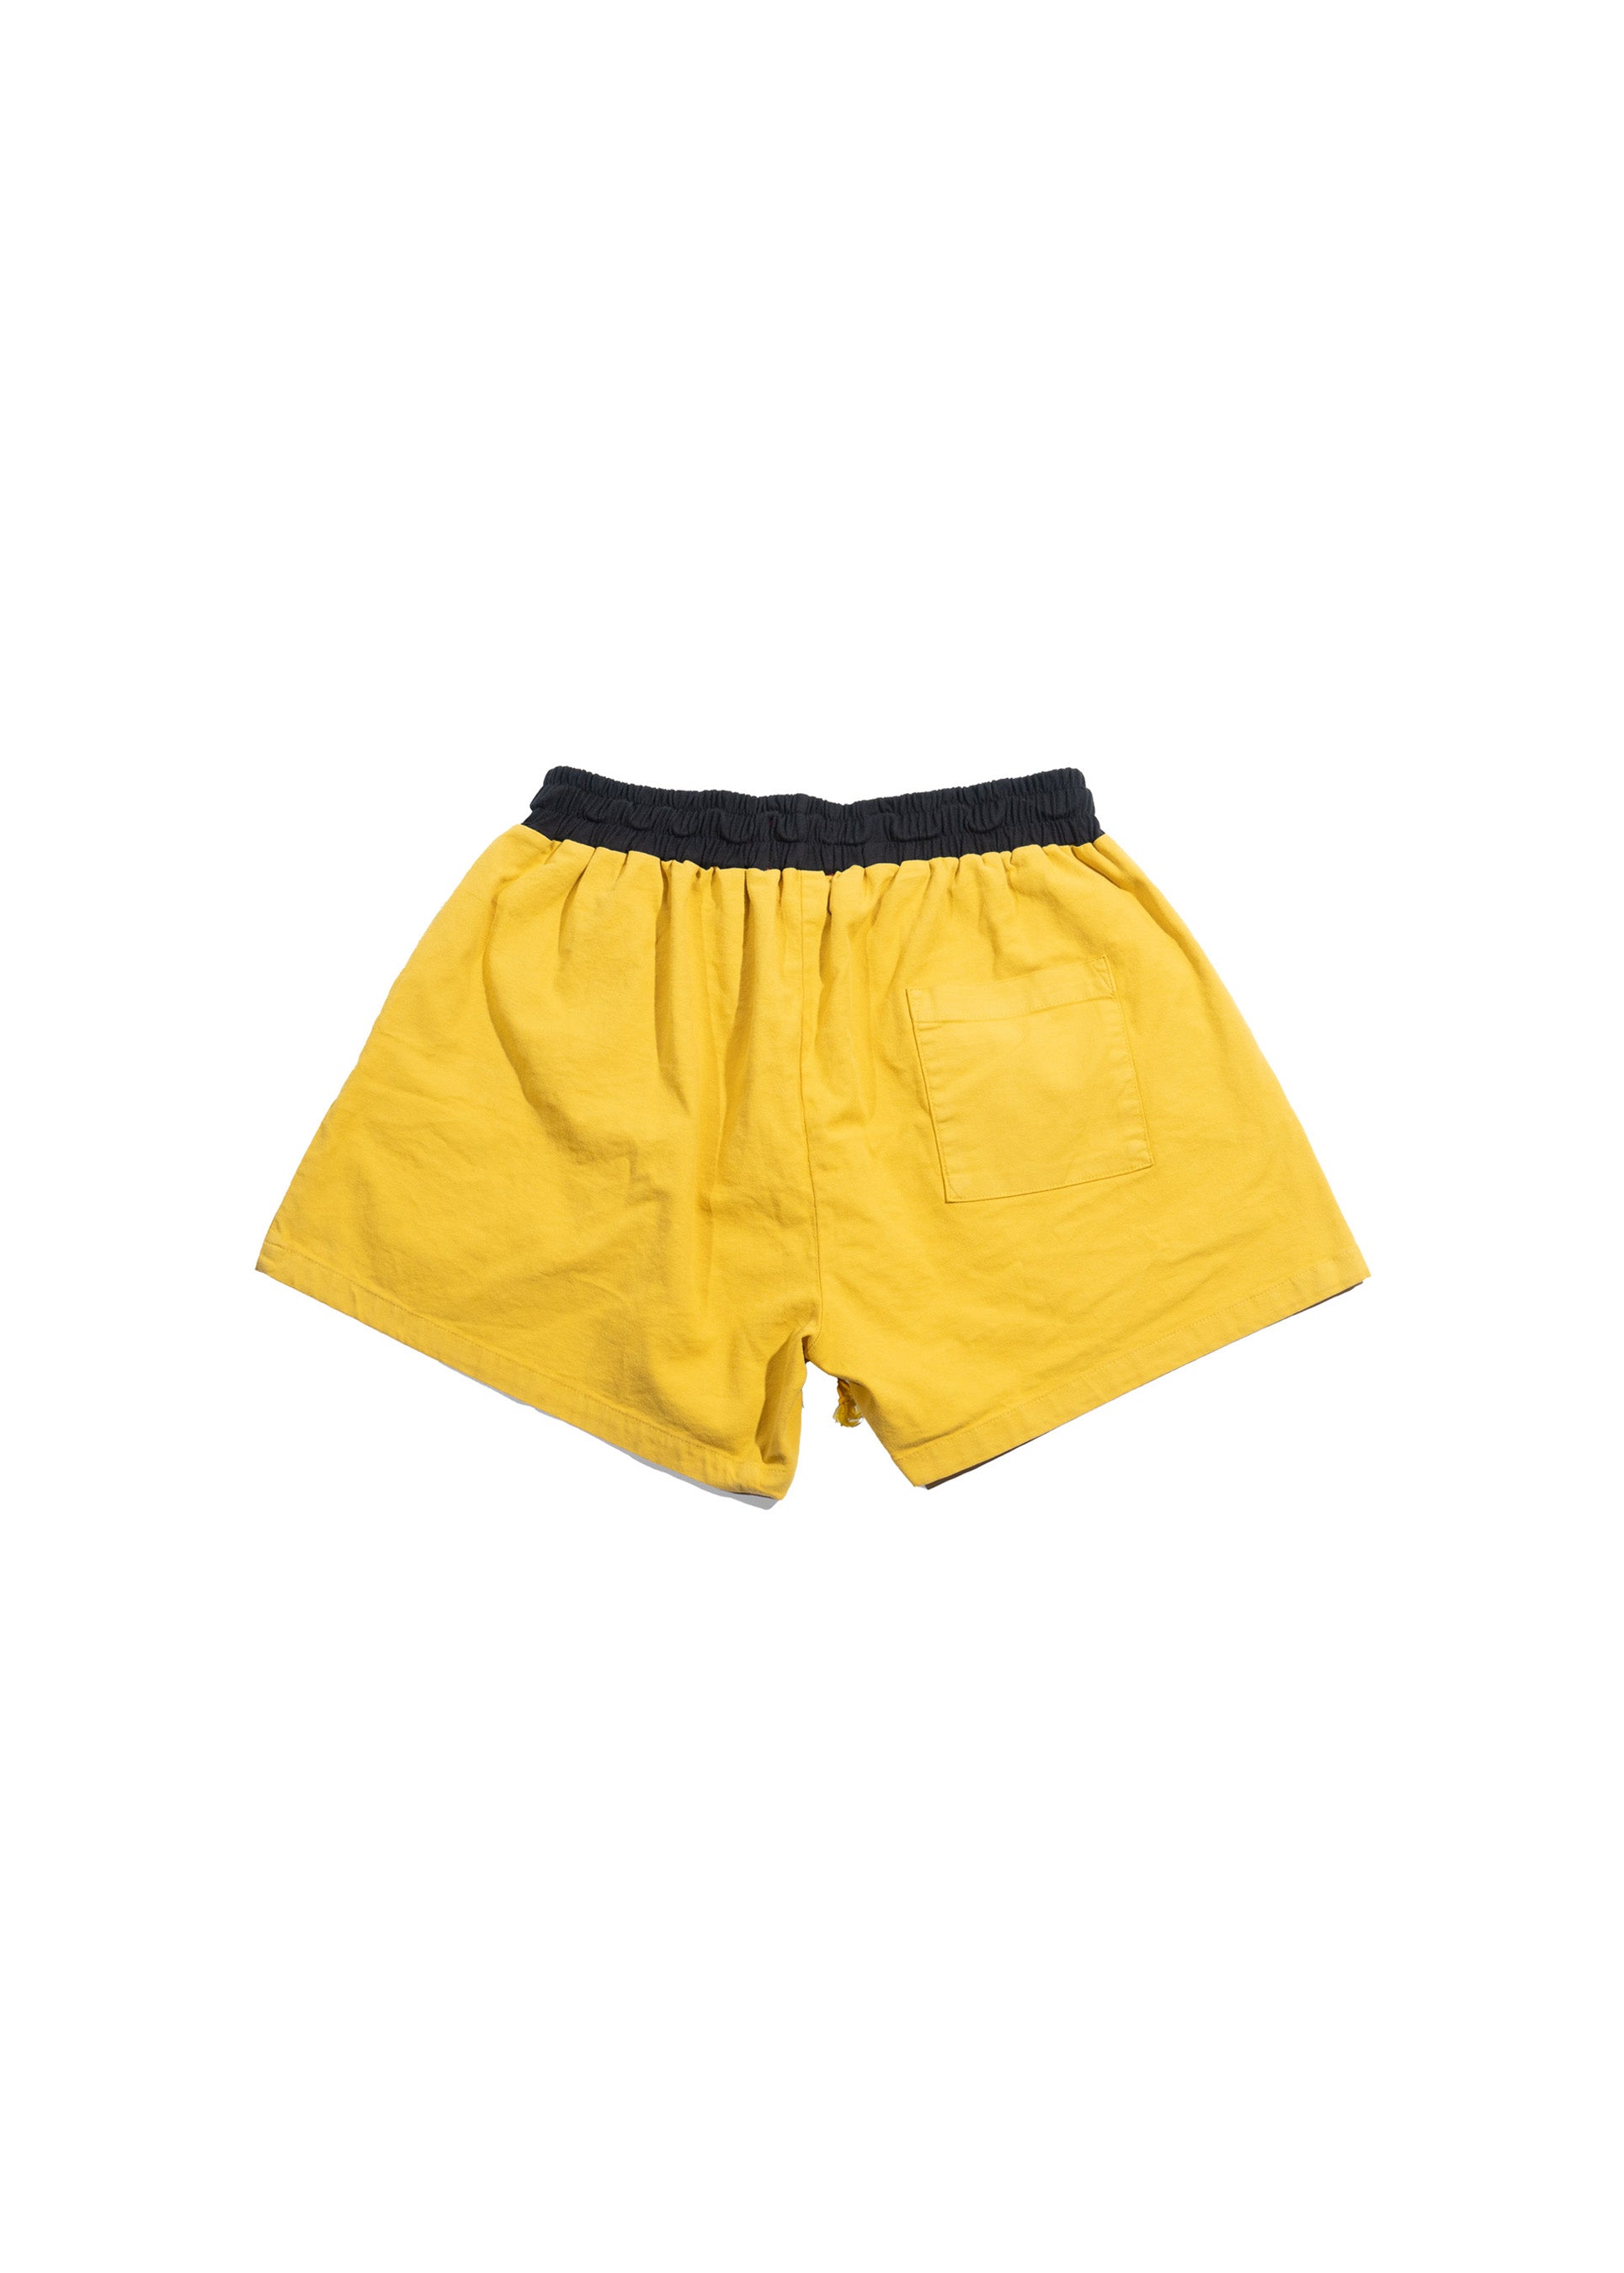 Mariners Team Shorts - Yellow